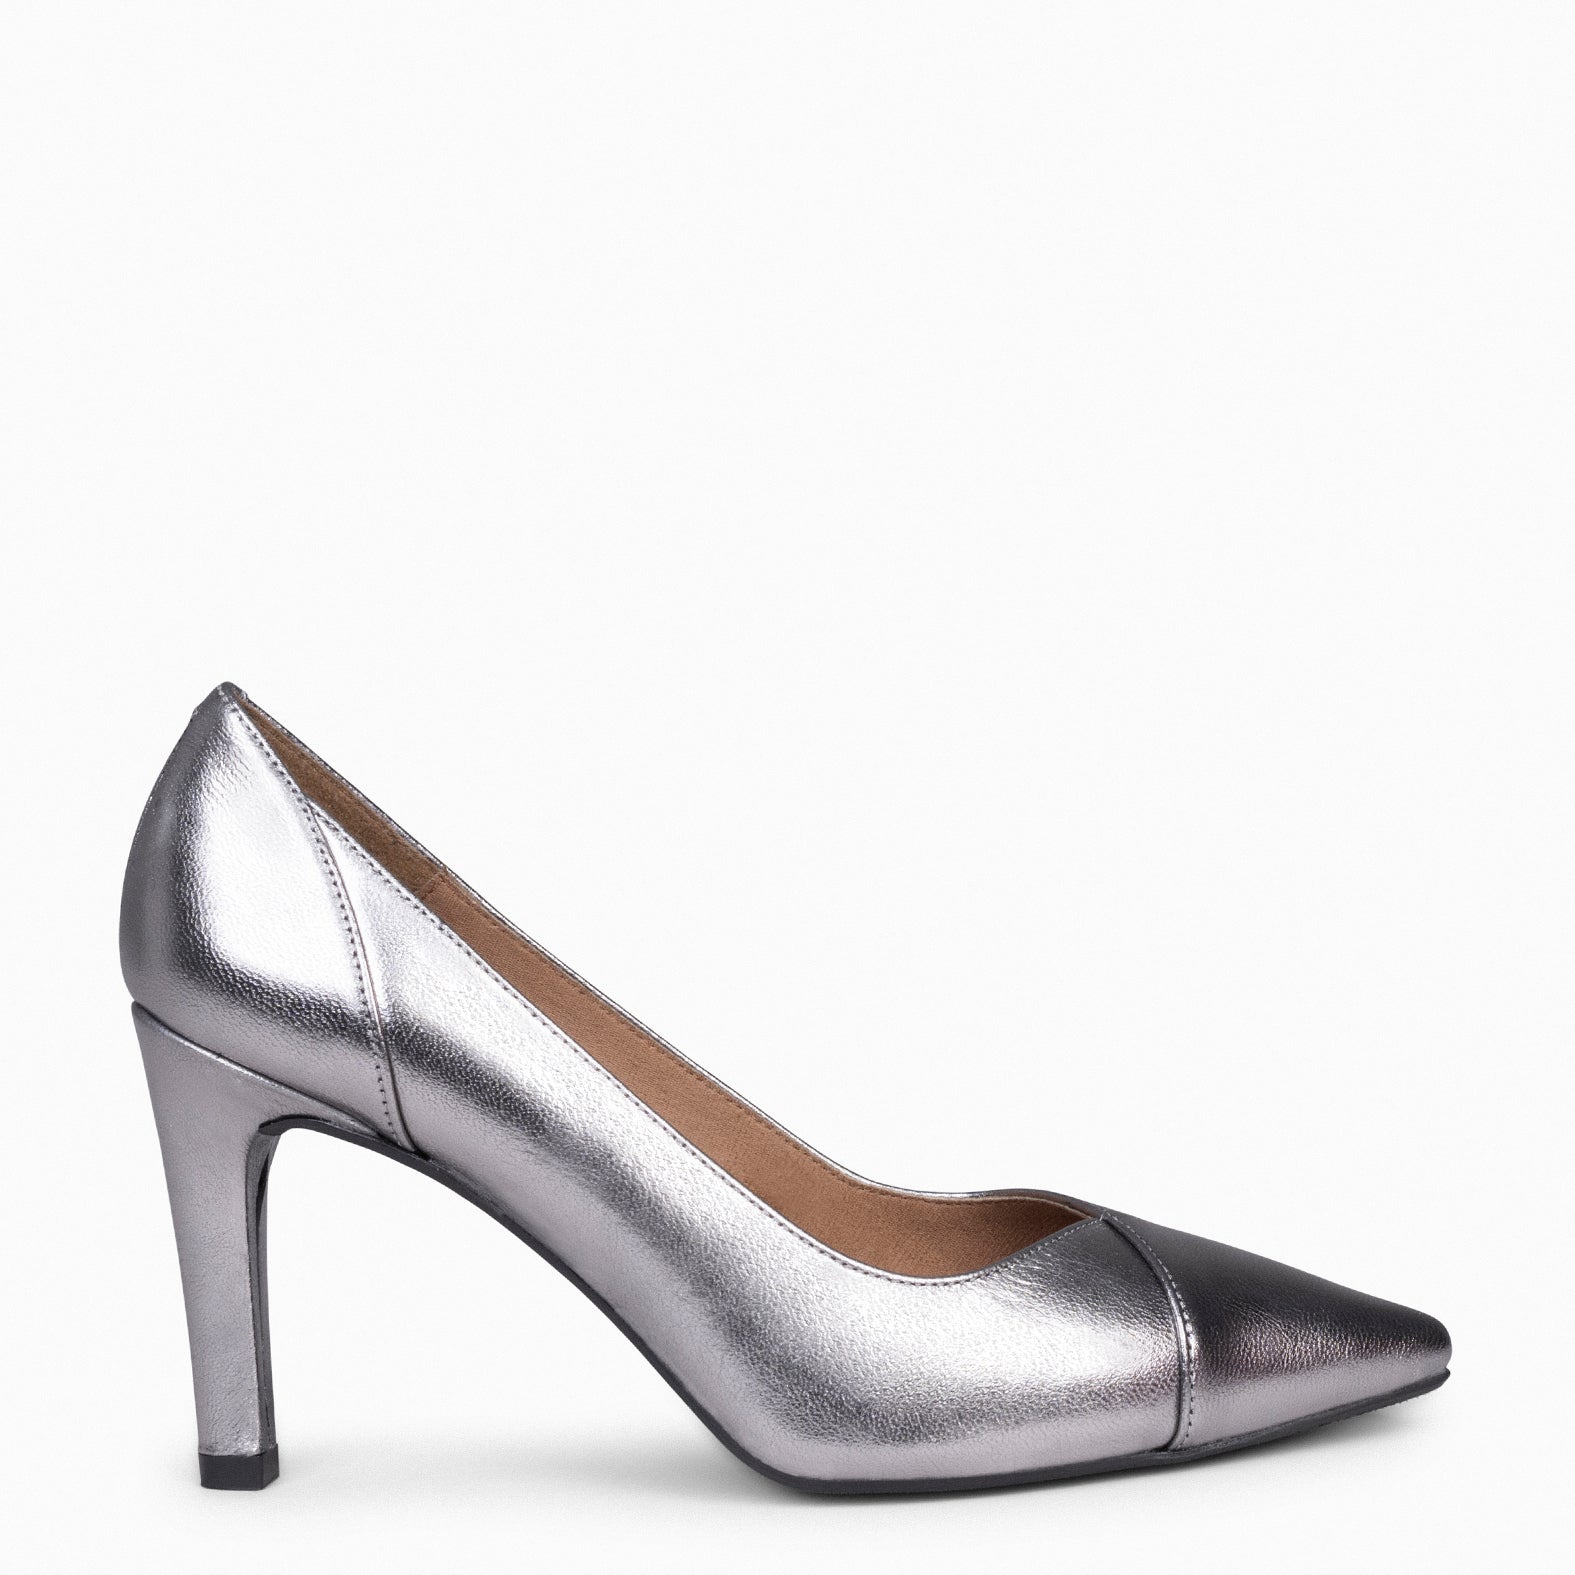 GLAM – Zapatos elegantes de tacón alto PLATA